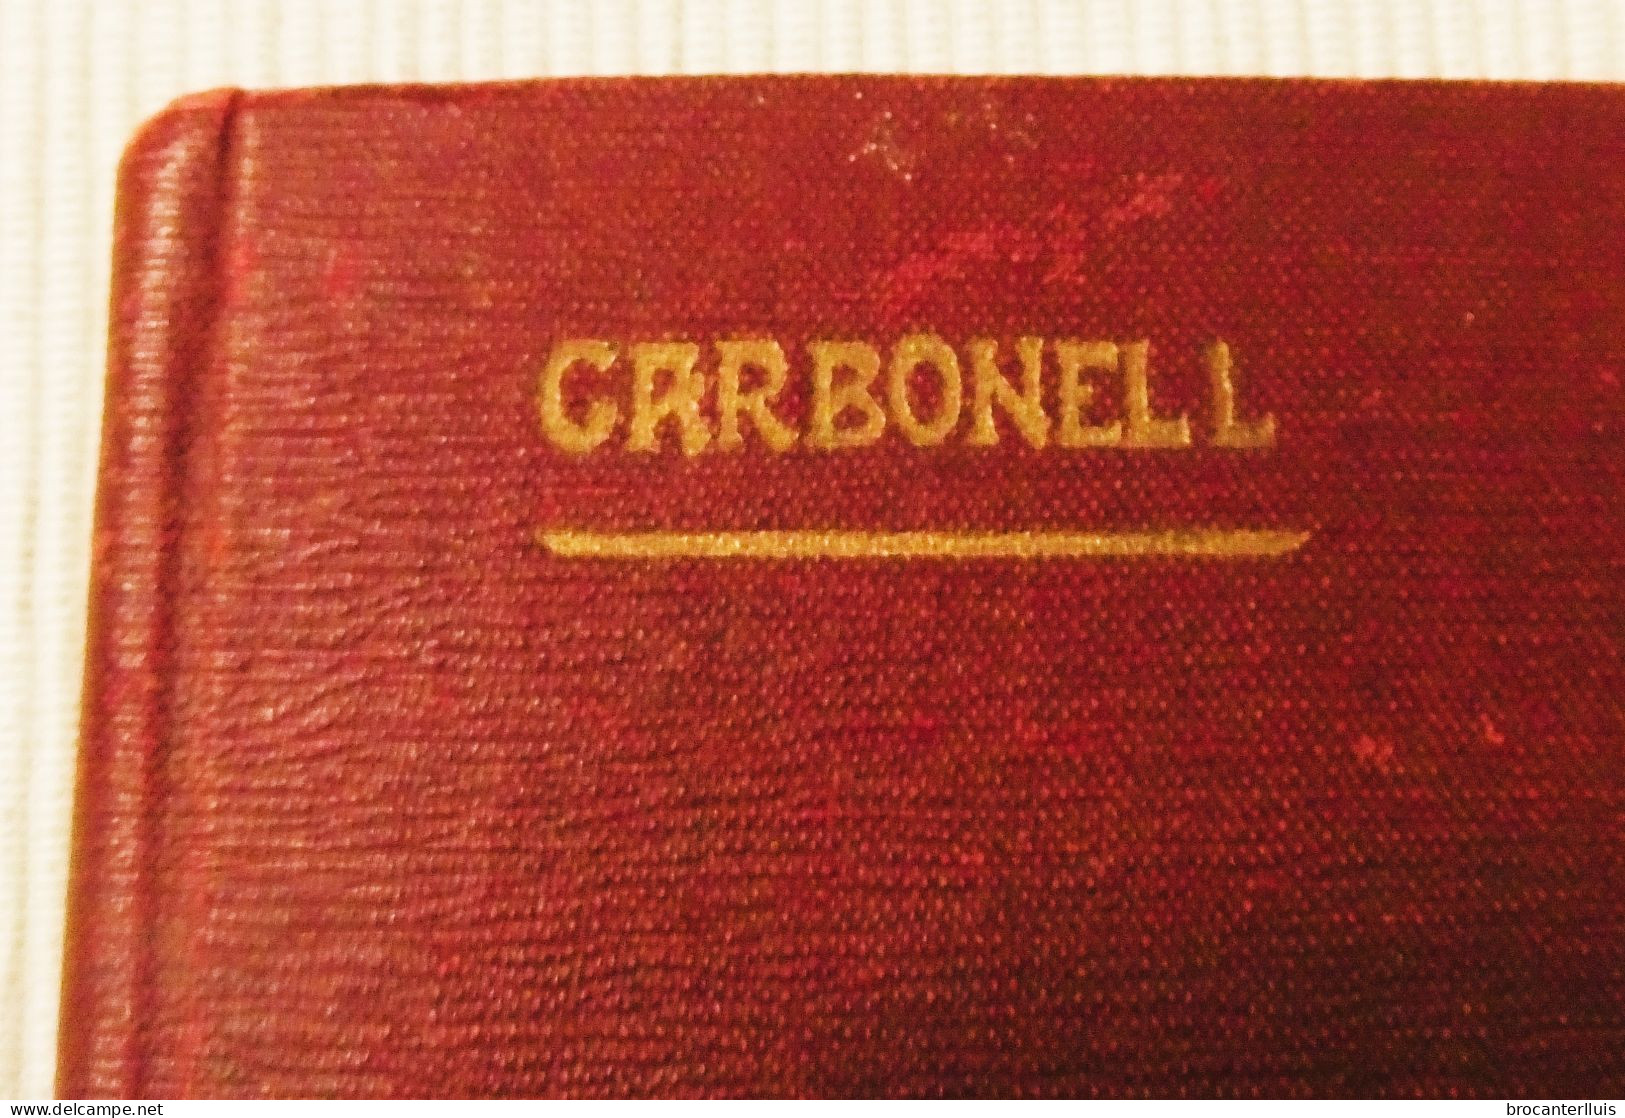 TRATADO DE CORTE Y CONFECCIÓN, MERCEDES CARBONELL 1923 - Handwetenschappen